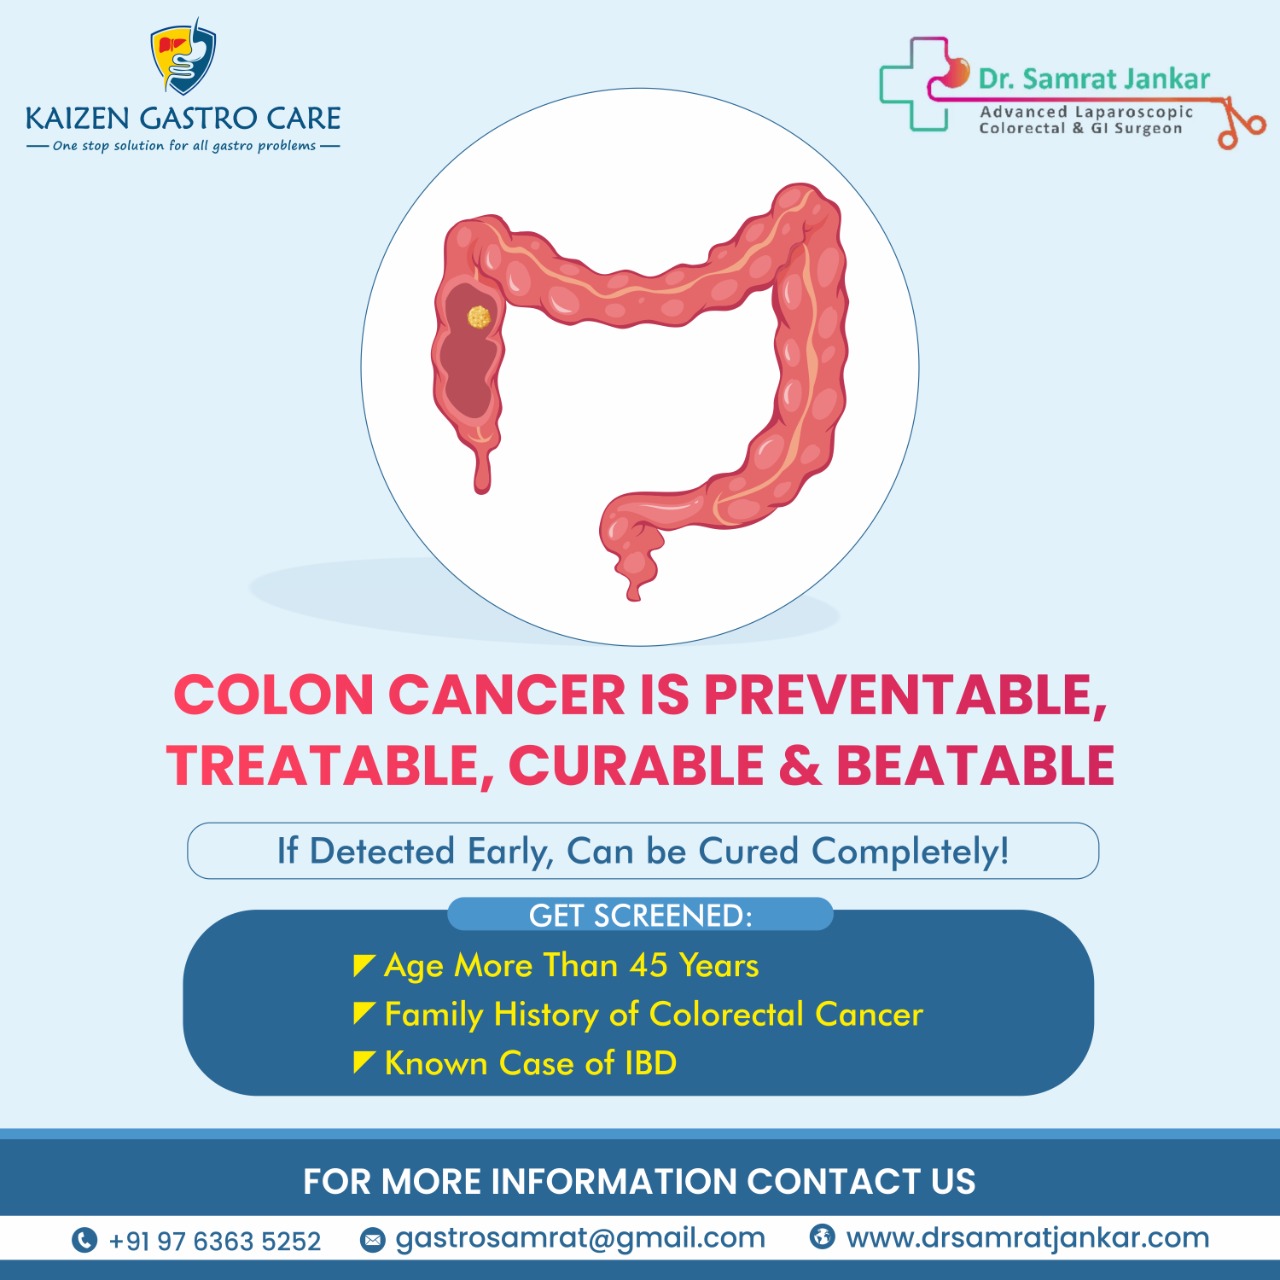 Colorectal Cancer Treatment in Pune- Dr. Samrat Jankar